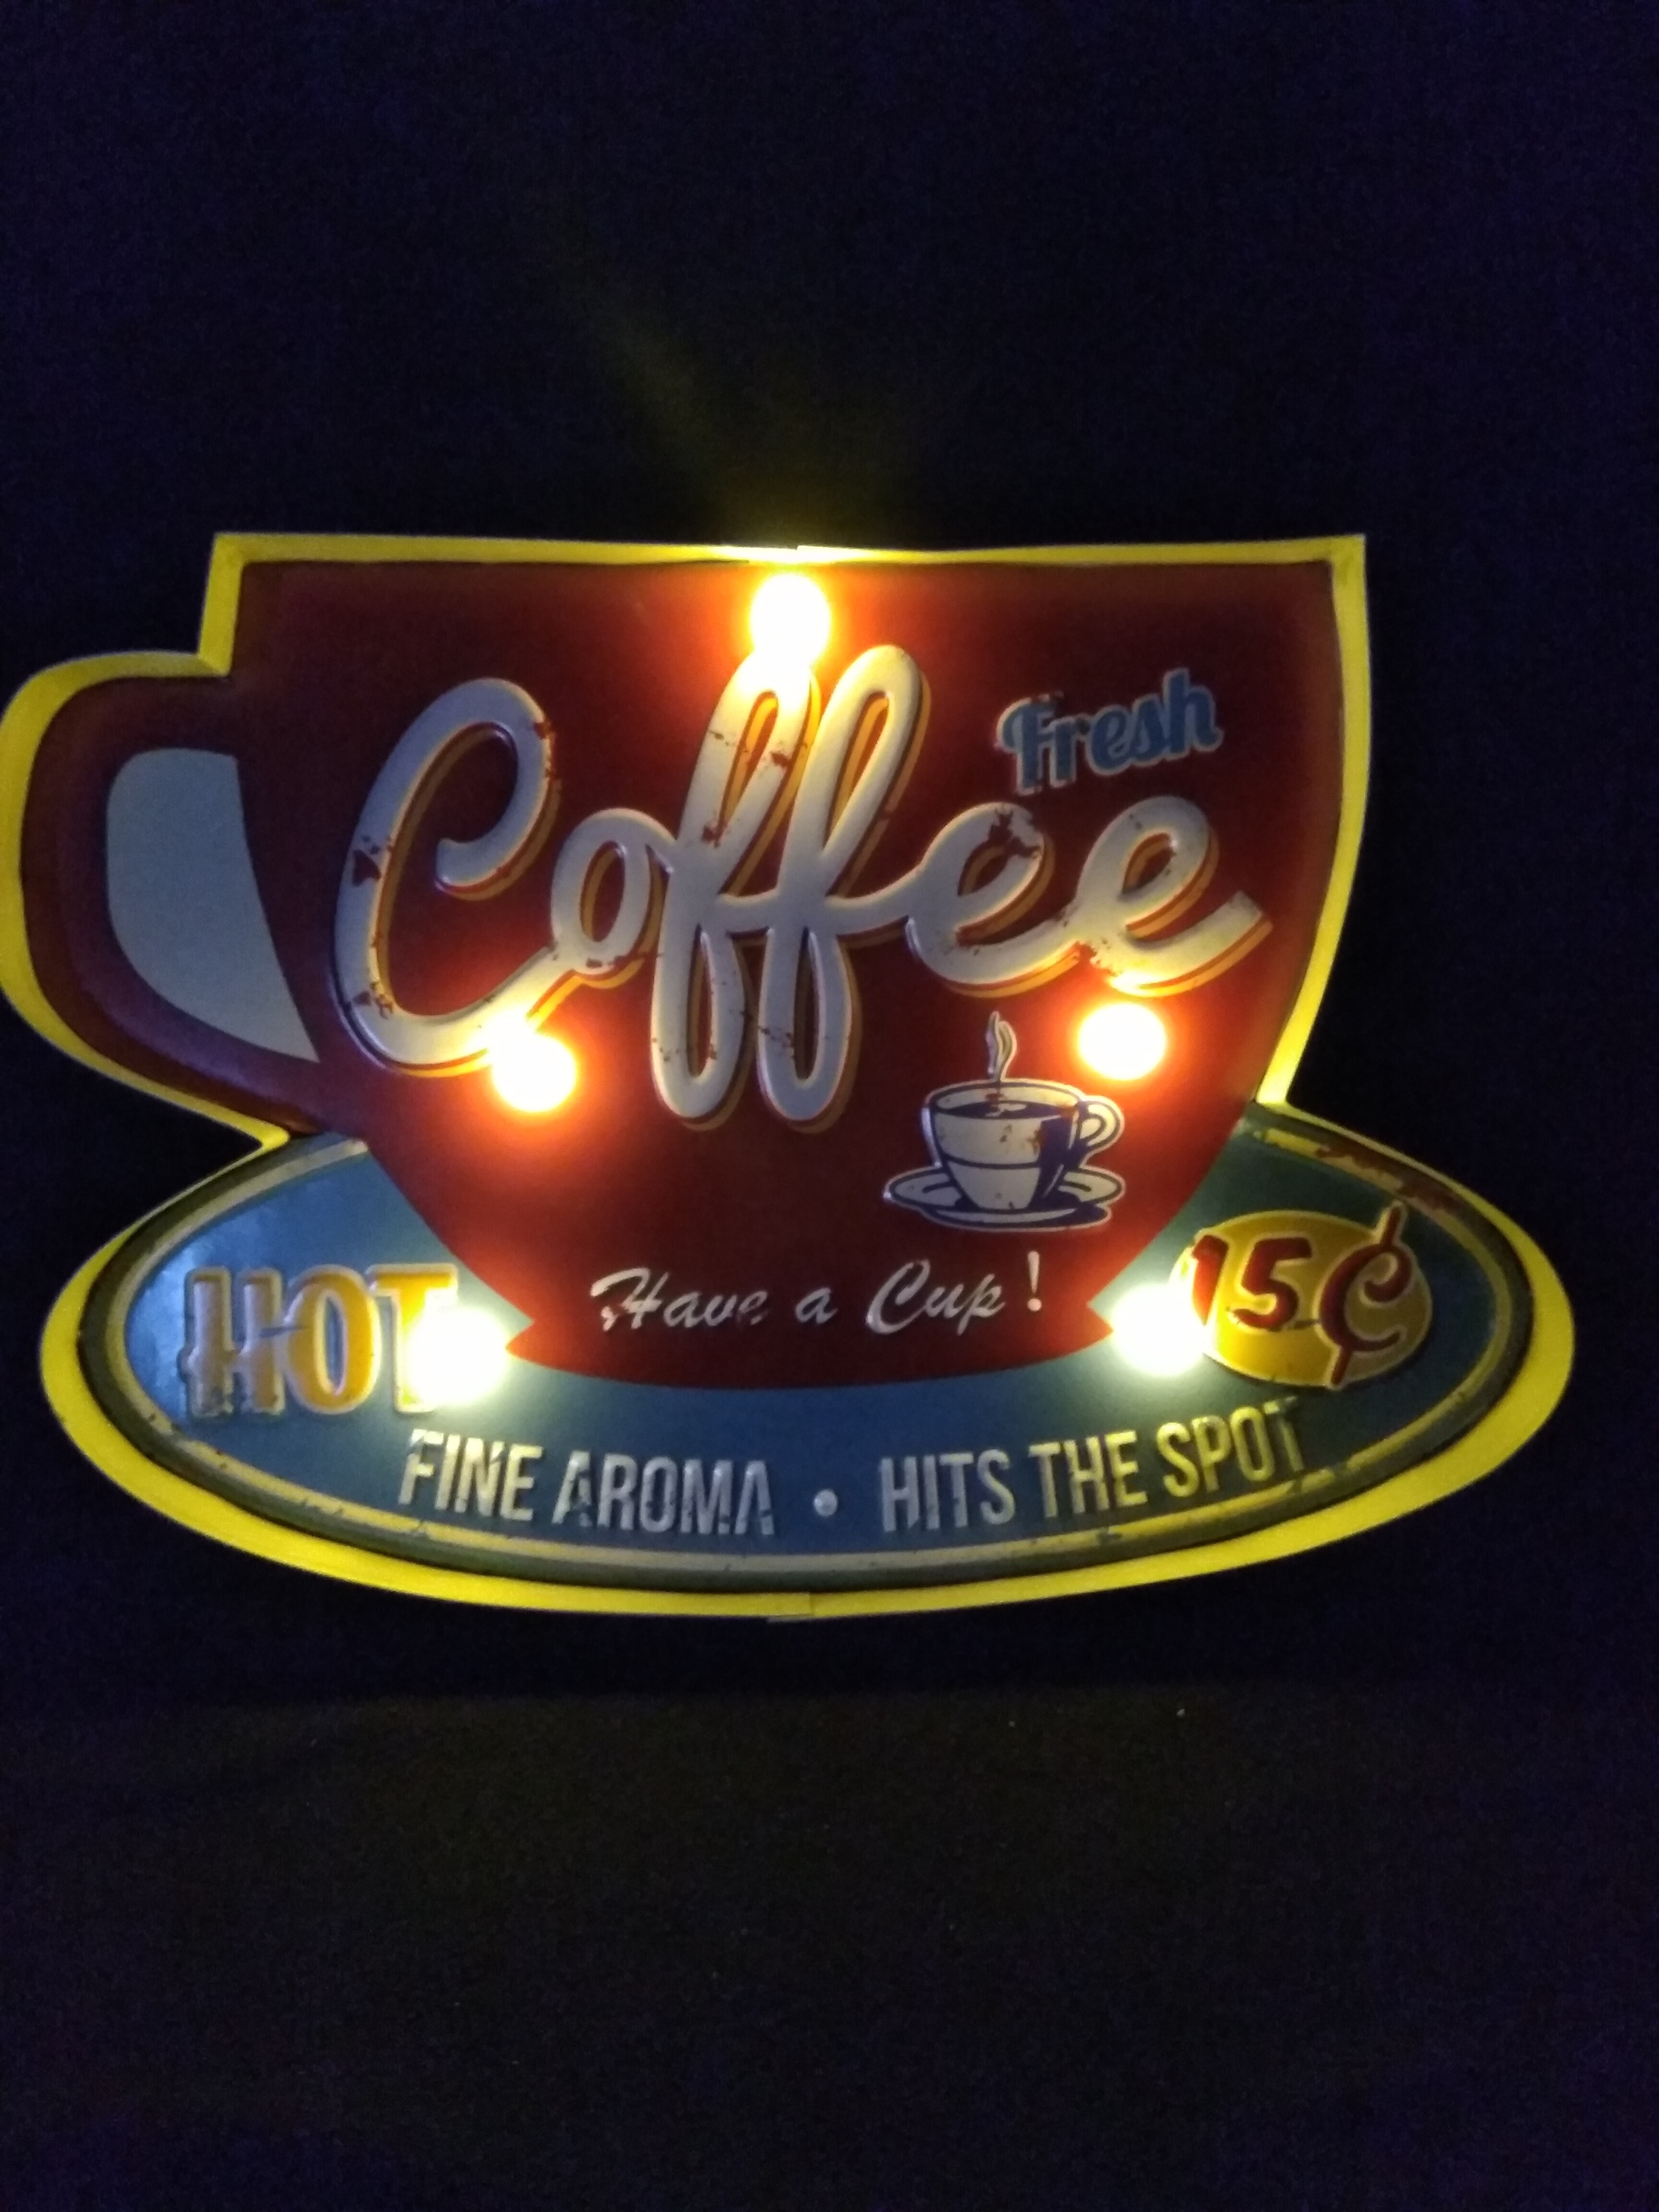 enseigne lumineuse murale métal déco rétro vintage publicitaire coffee